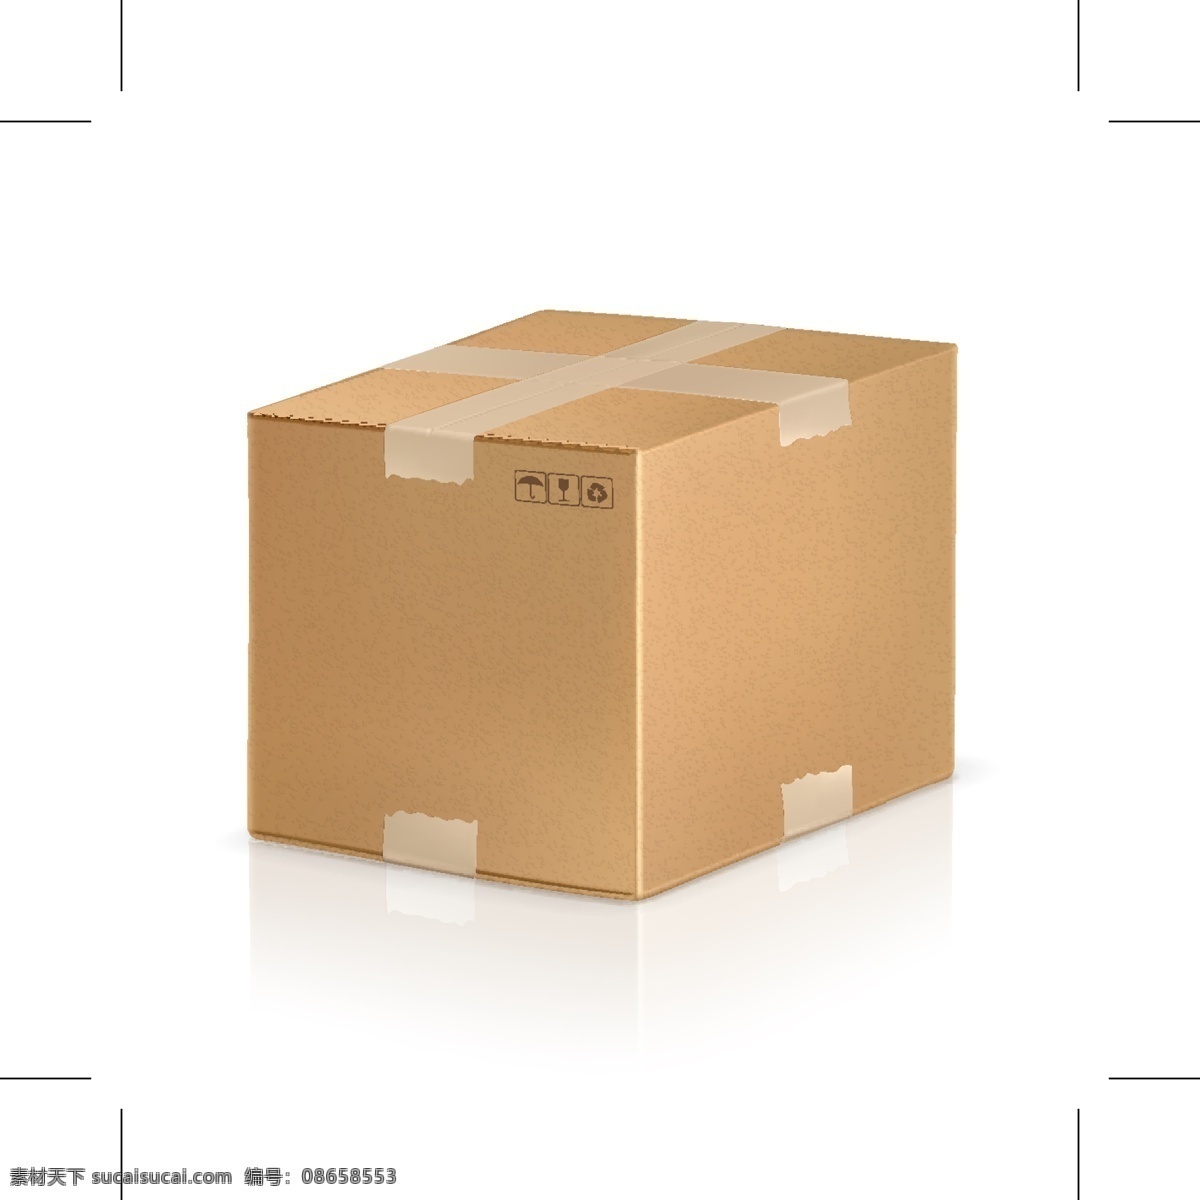 矢量 箱子 设计素材 箱子设计 矢量箱子 纸箱 包装 产品包装 包装箱 矢量素材 包装设计 白色